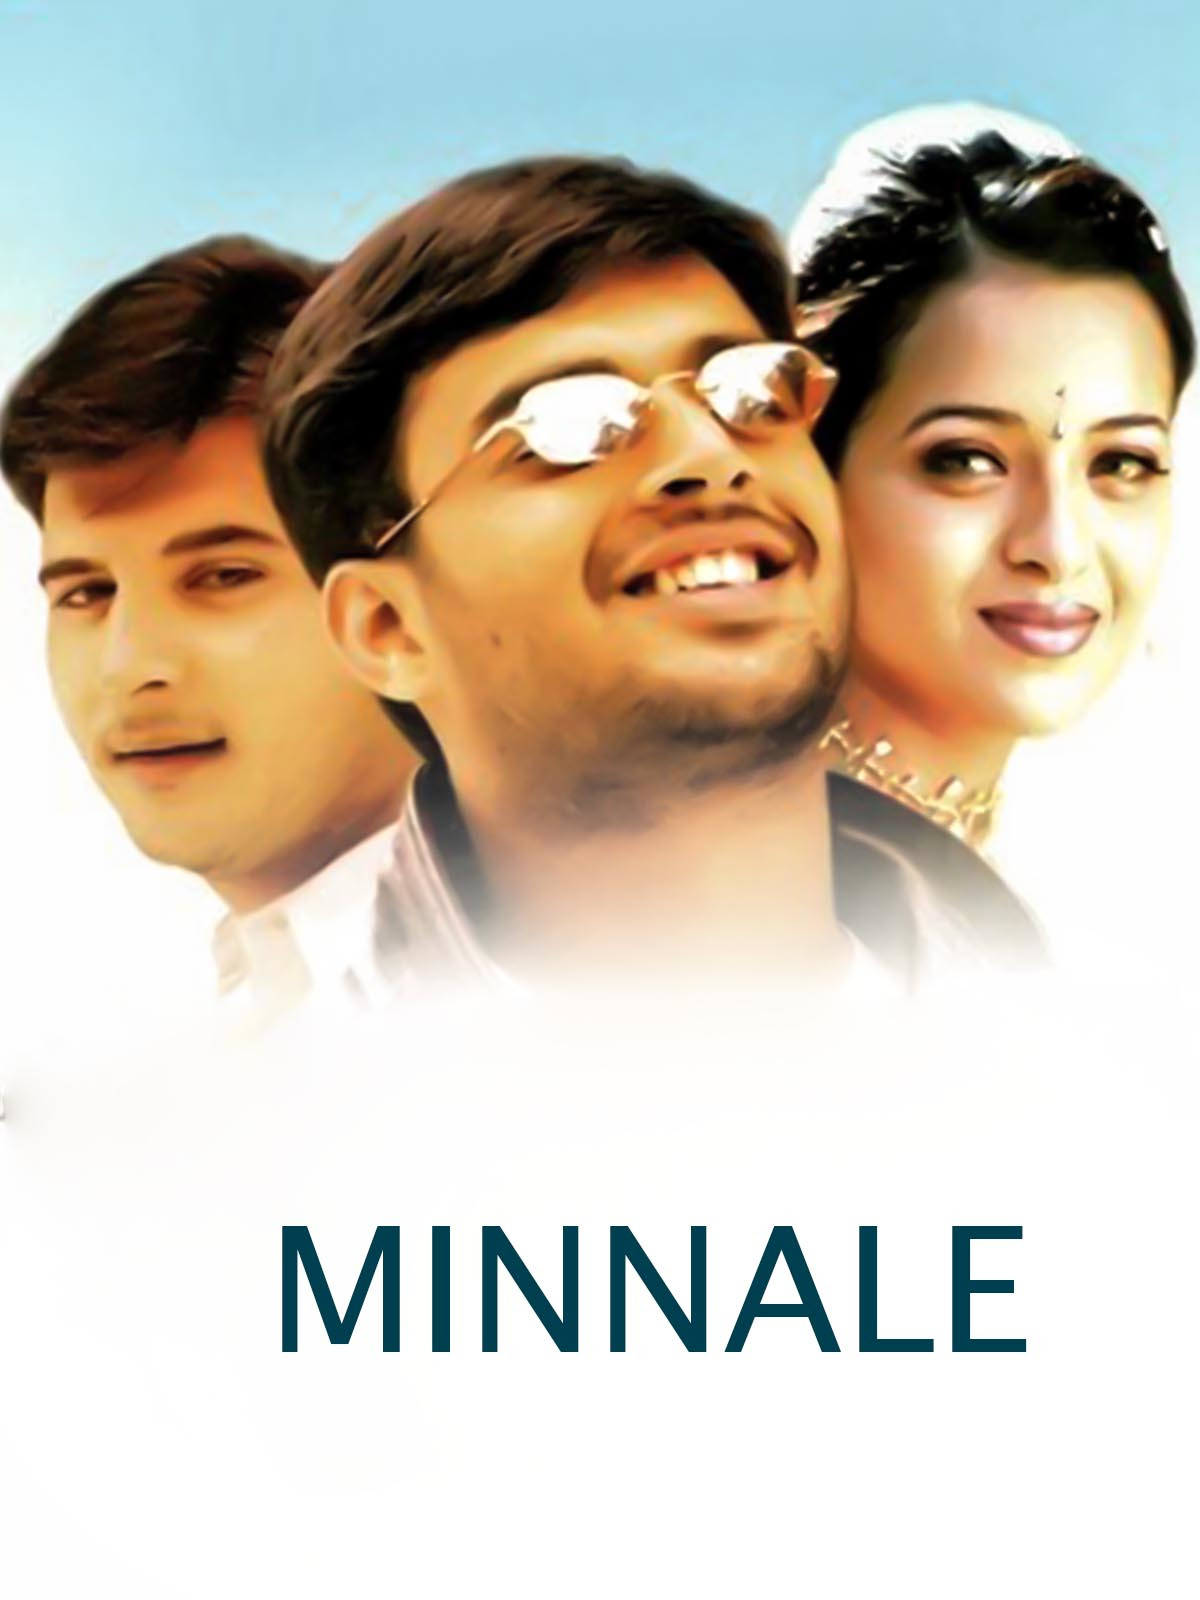 tamil romantic movie list - Minnale 